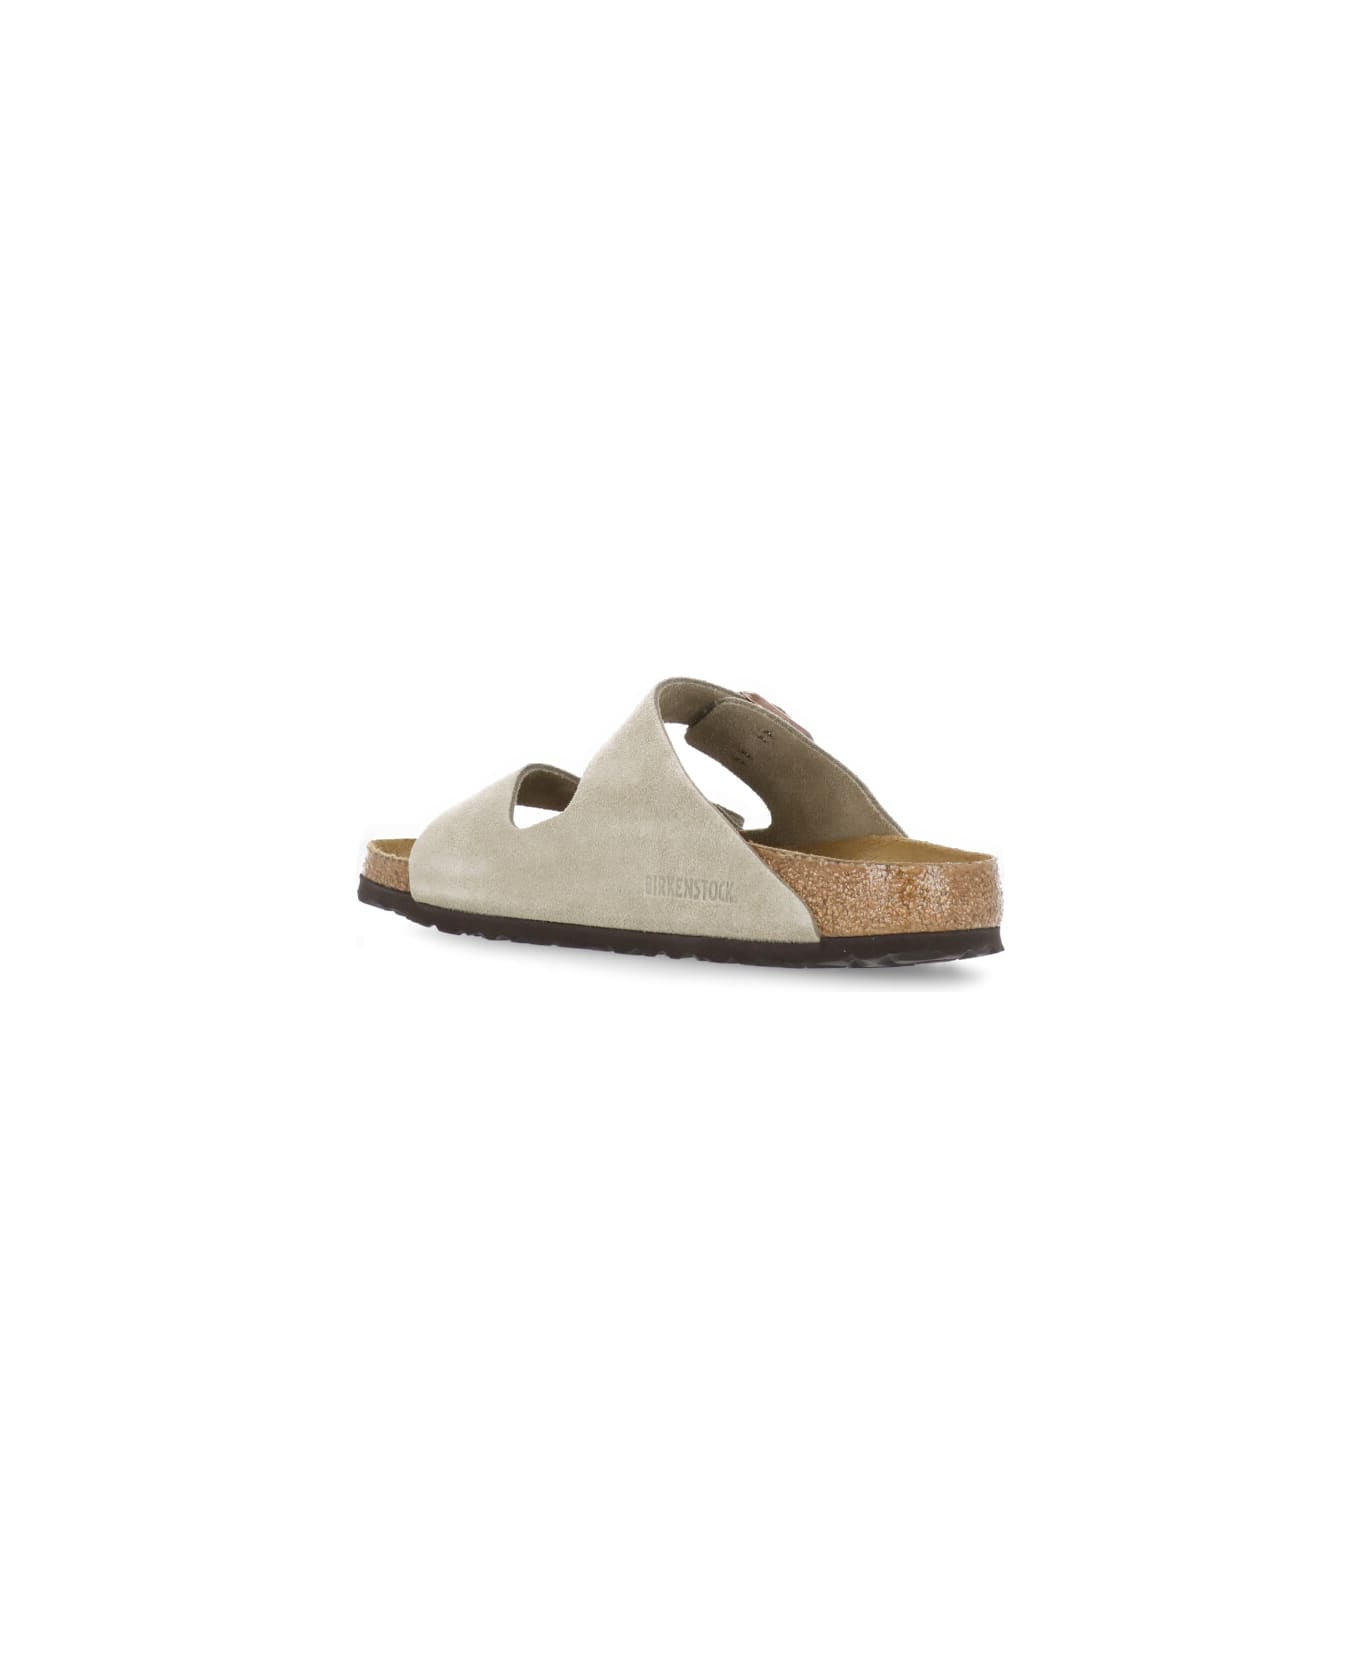 Birkenstock Arizona Bs Sandals - Beige フラットシューズ